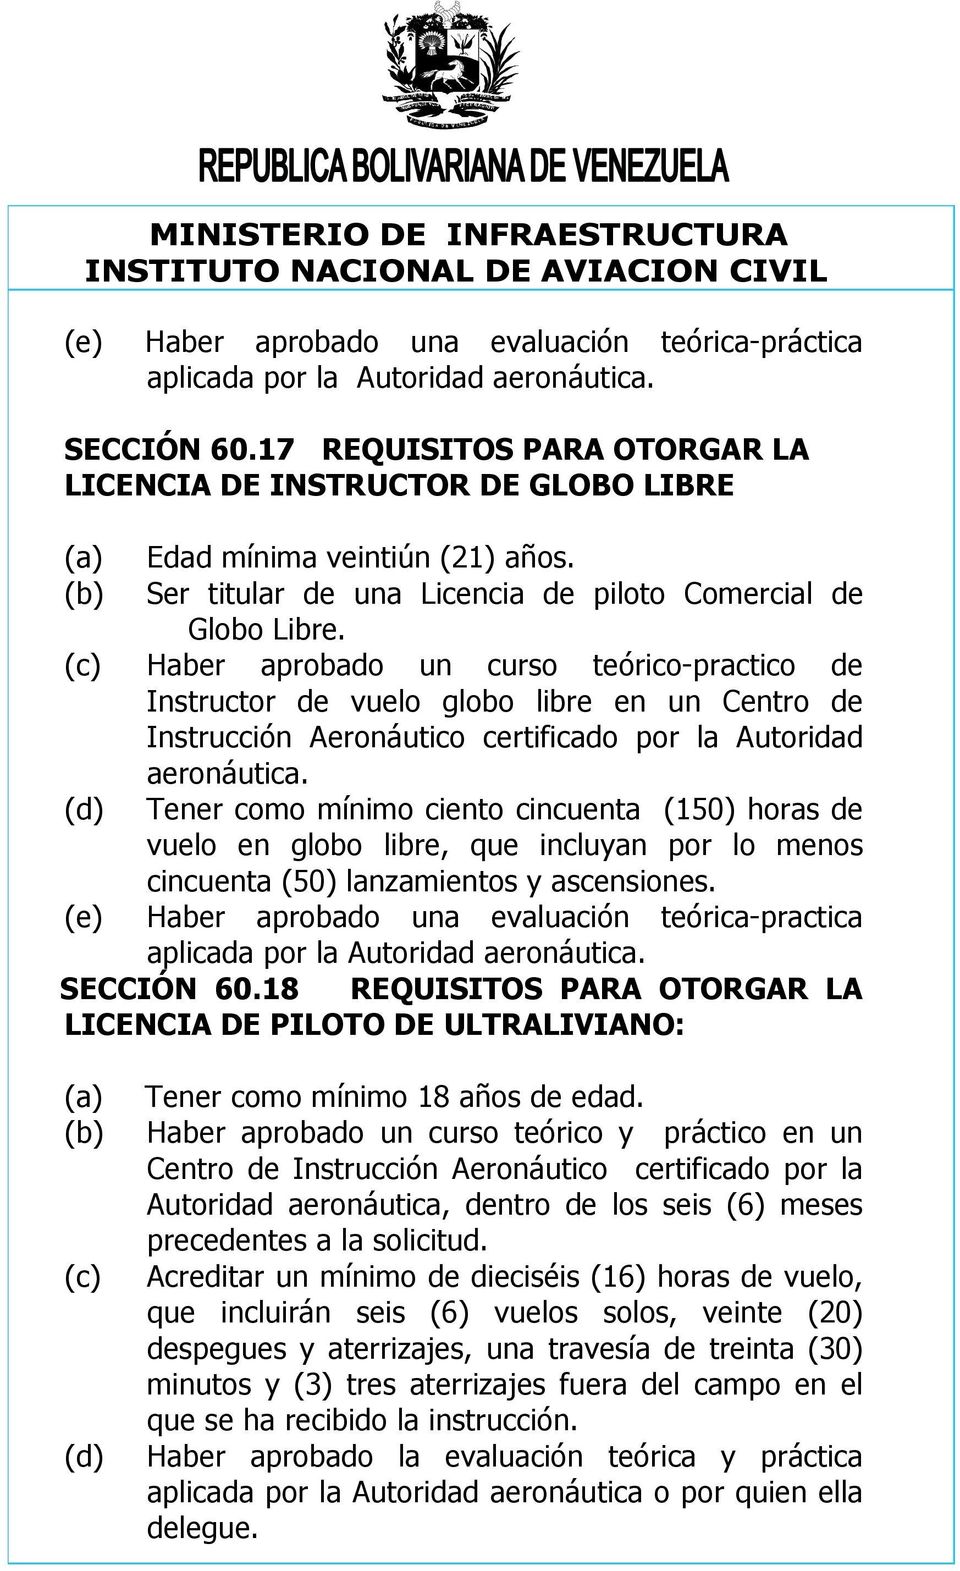 (c) Haber aprobado un curso teórico-practico de Instructor de vuelo globo libre en un Centro de Instrucción Aeronáutico certificado por la Autoridad aeronáutica.